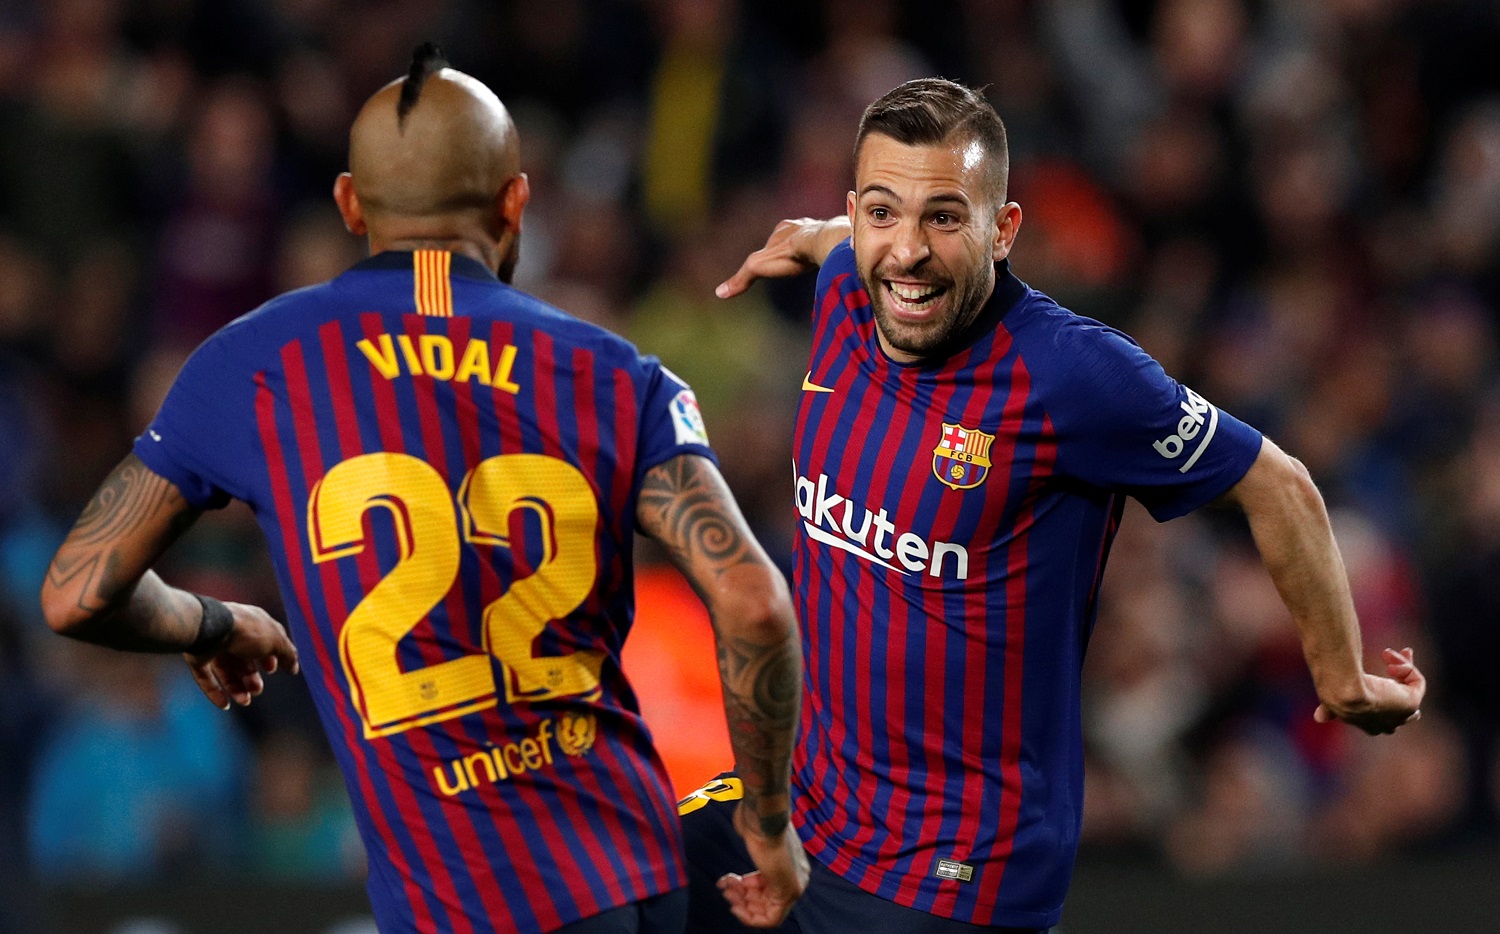 مدافع برشلونة جوري ألبا يحتفل مع زميله أرتورو فيدال بتسجيله هدفاً أمام ريال سوسيداد. رويترز